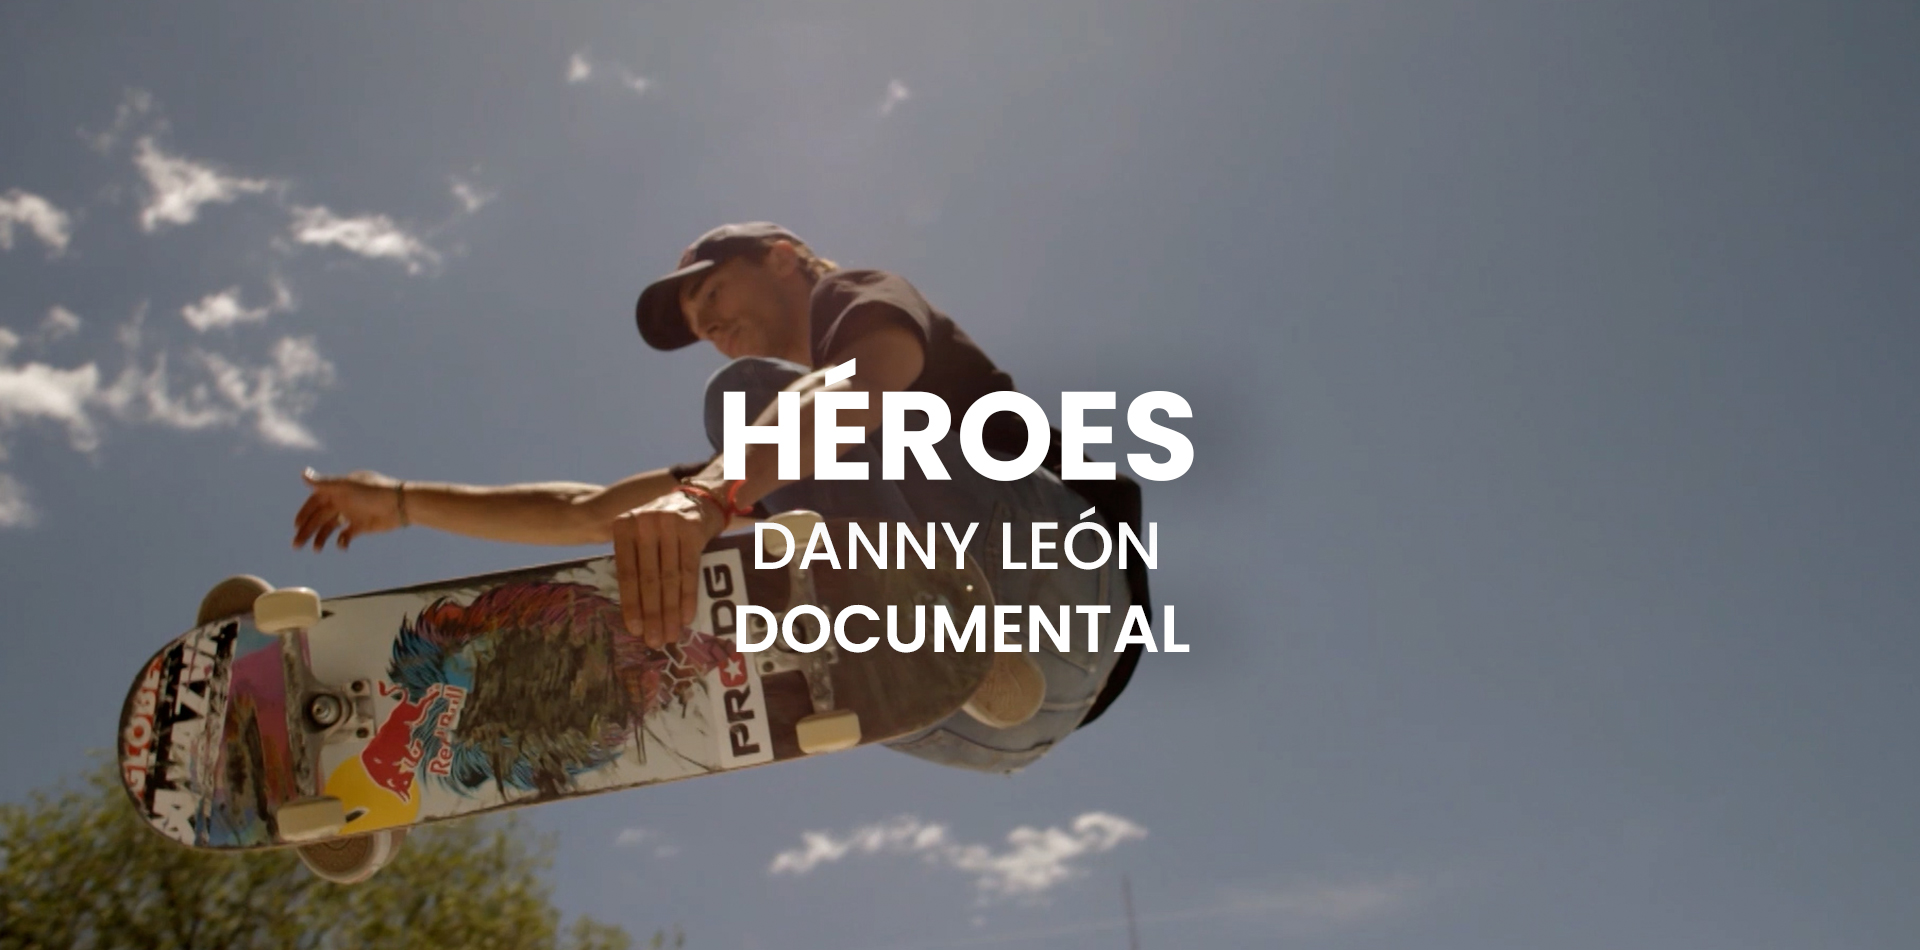 Documental Héroes